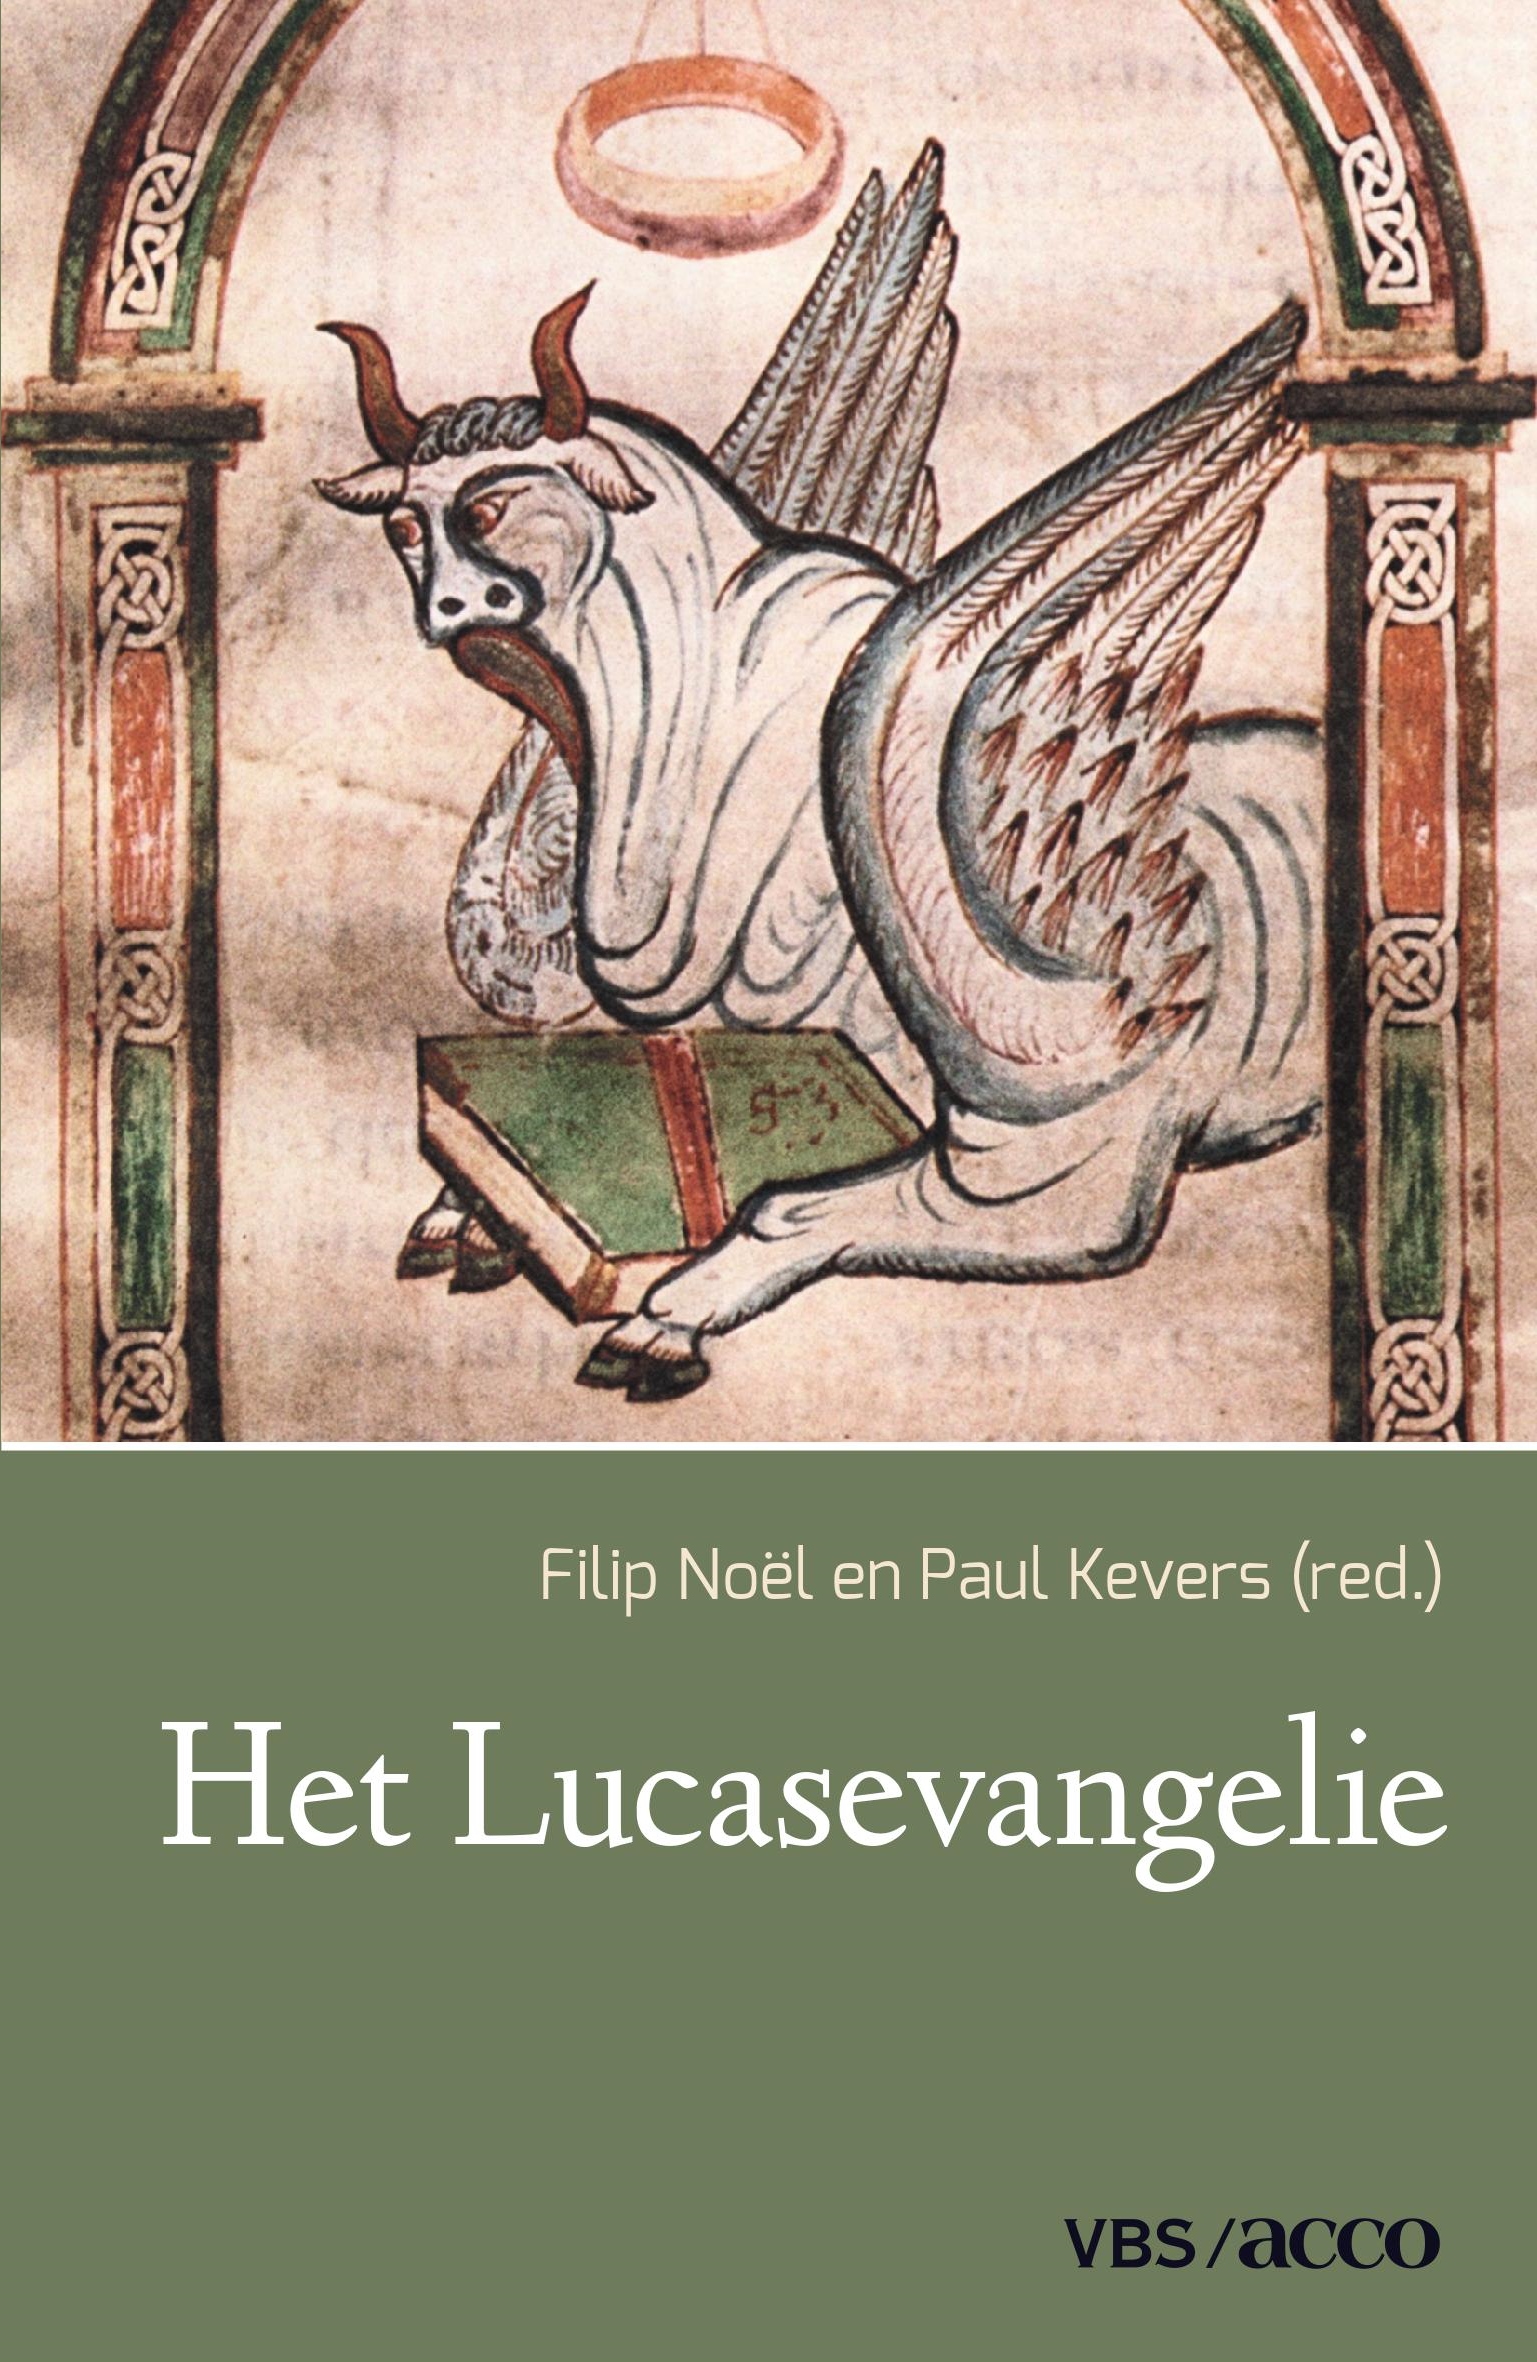 Filip Noël en Paul Kevers (red.), Het Lucasevangelie, Leuven: VBS-Acco, 2019, 180 p., € 24,20